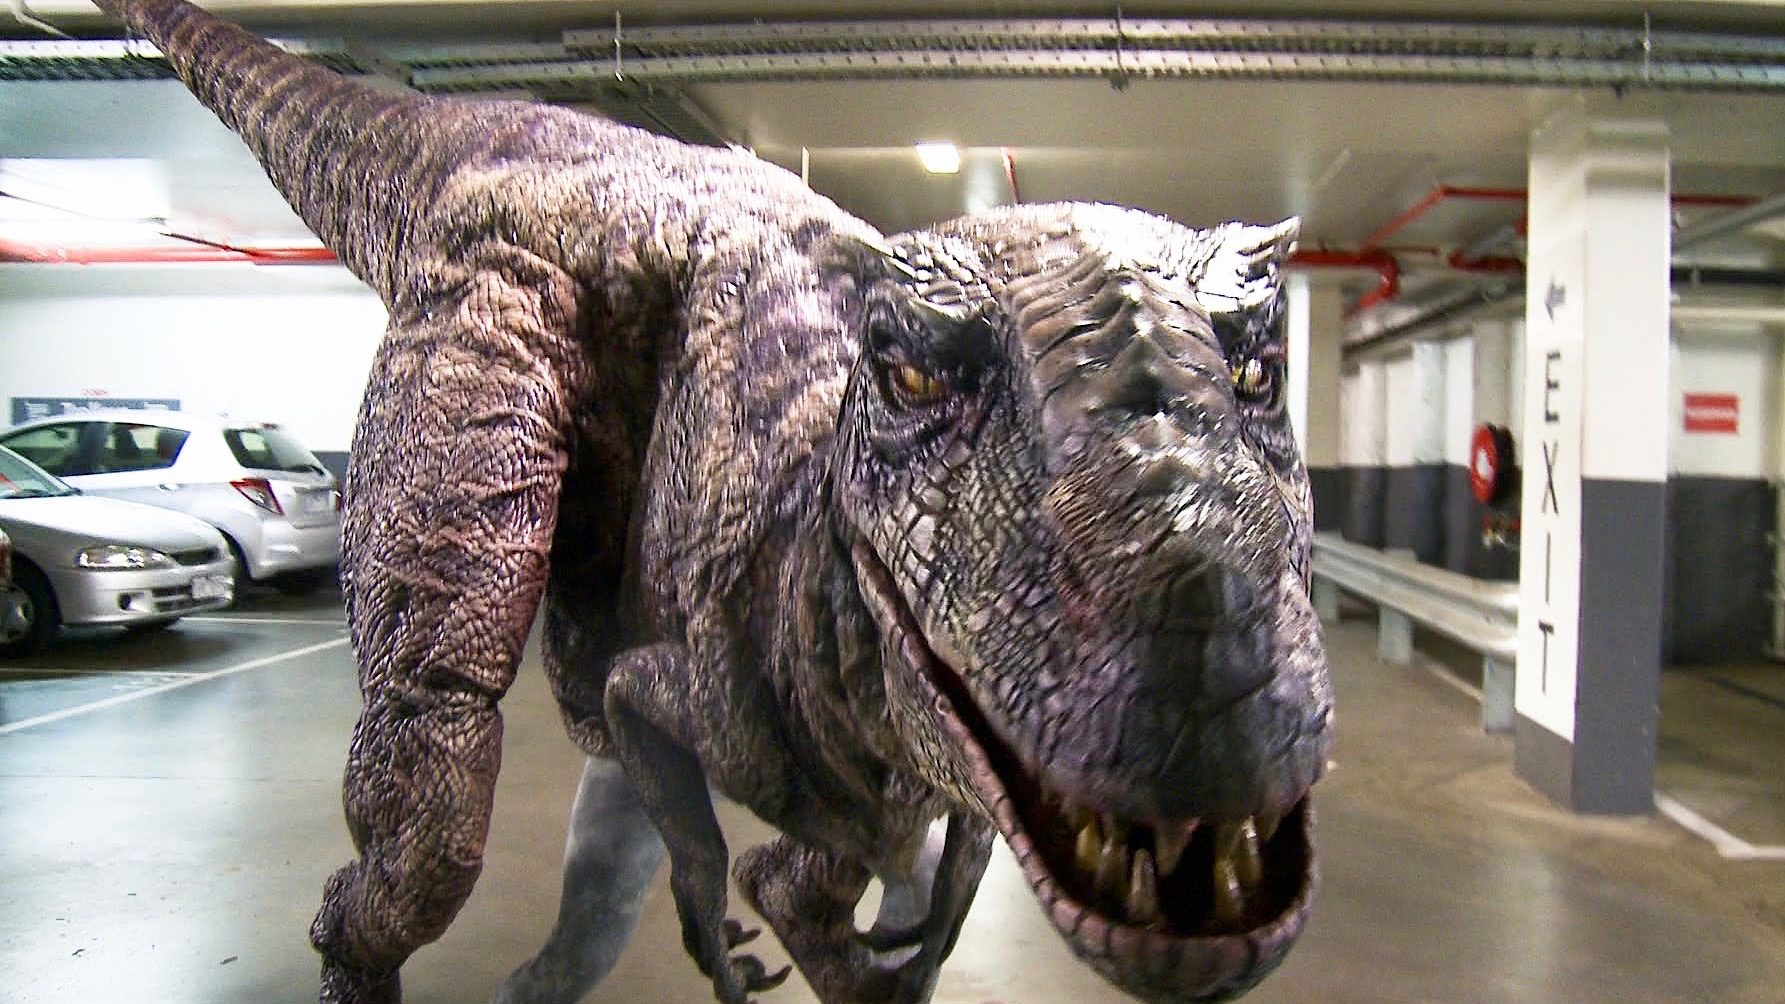 Encontrar um dinossauro super realista no estacionamento deve ser